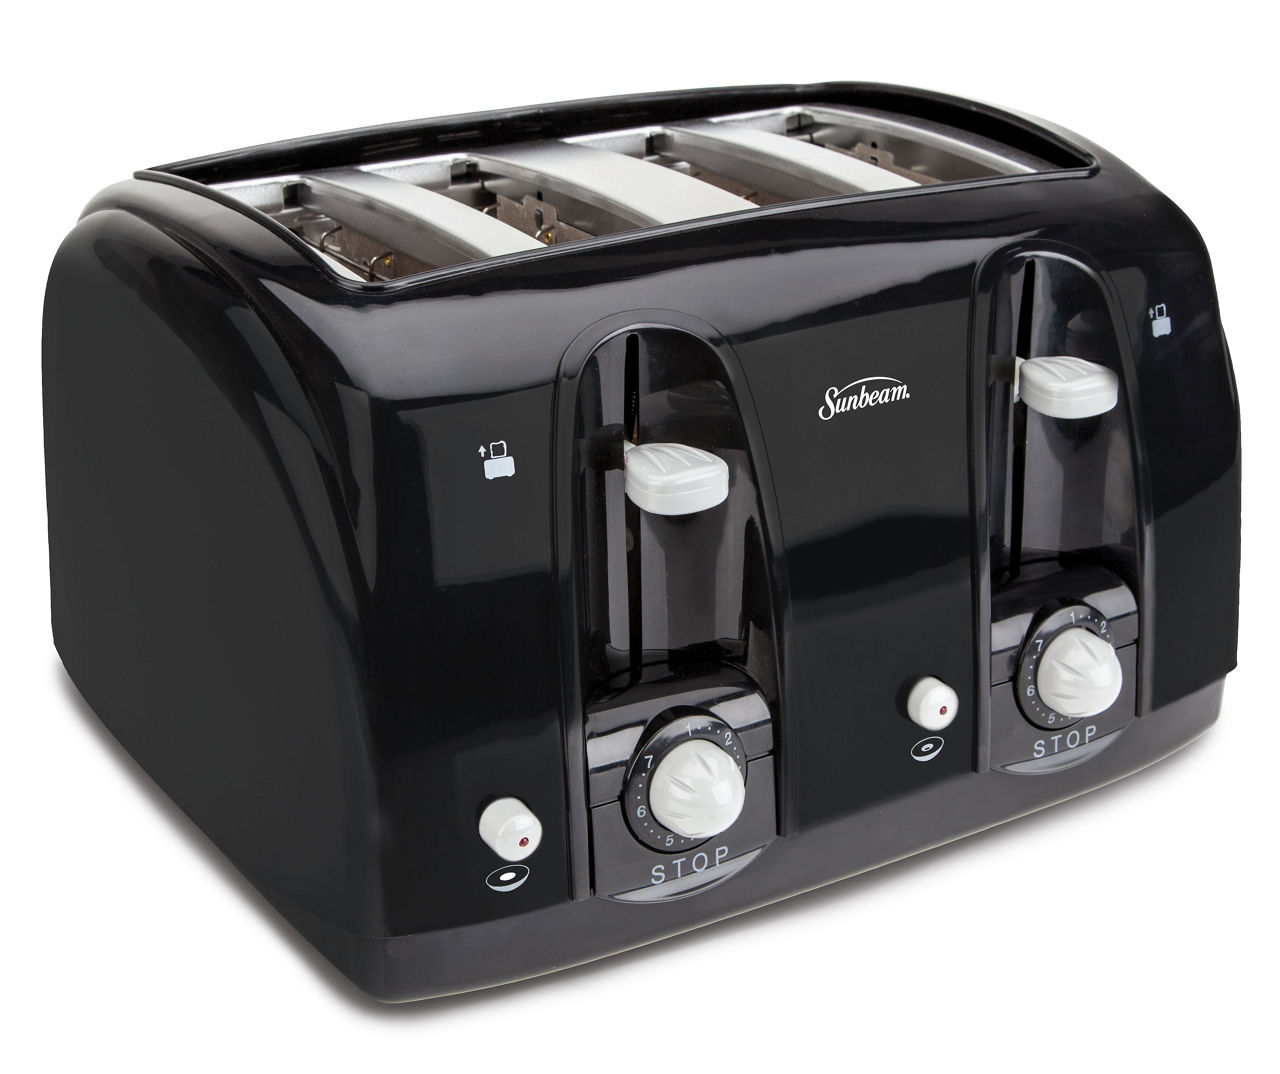 Black & Decker 4 Slice Toaster